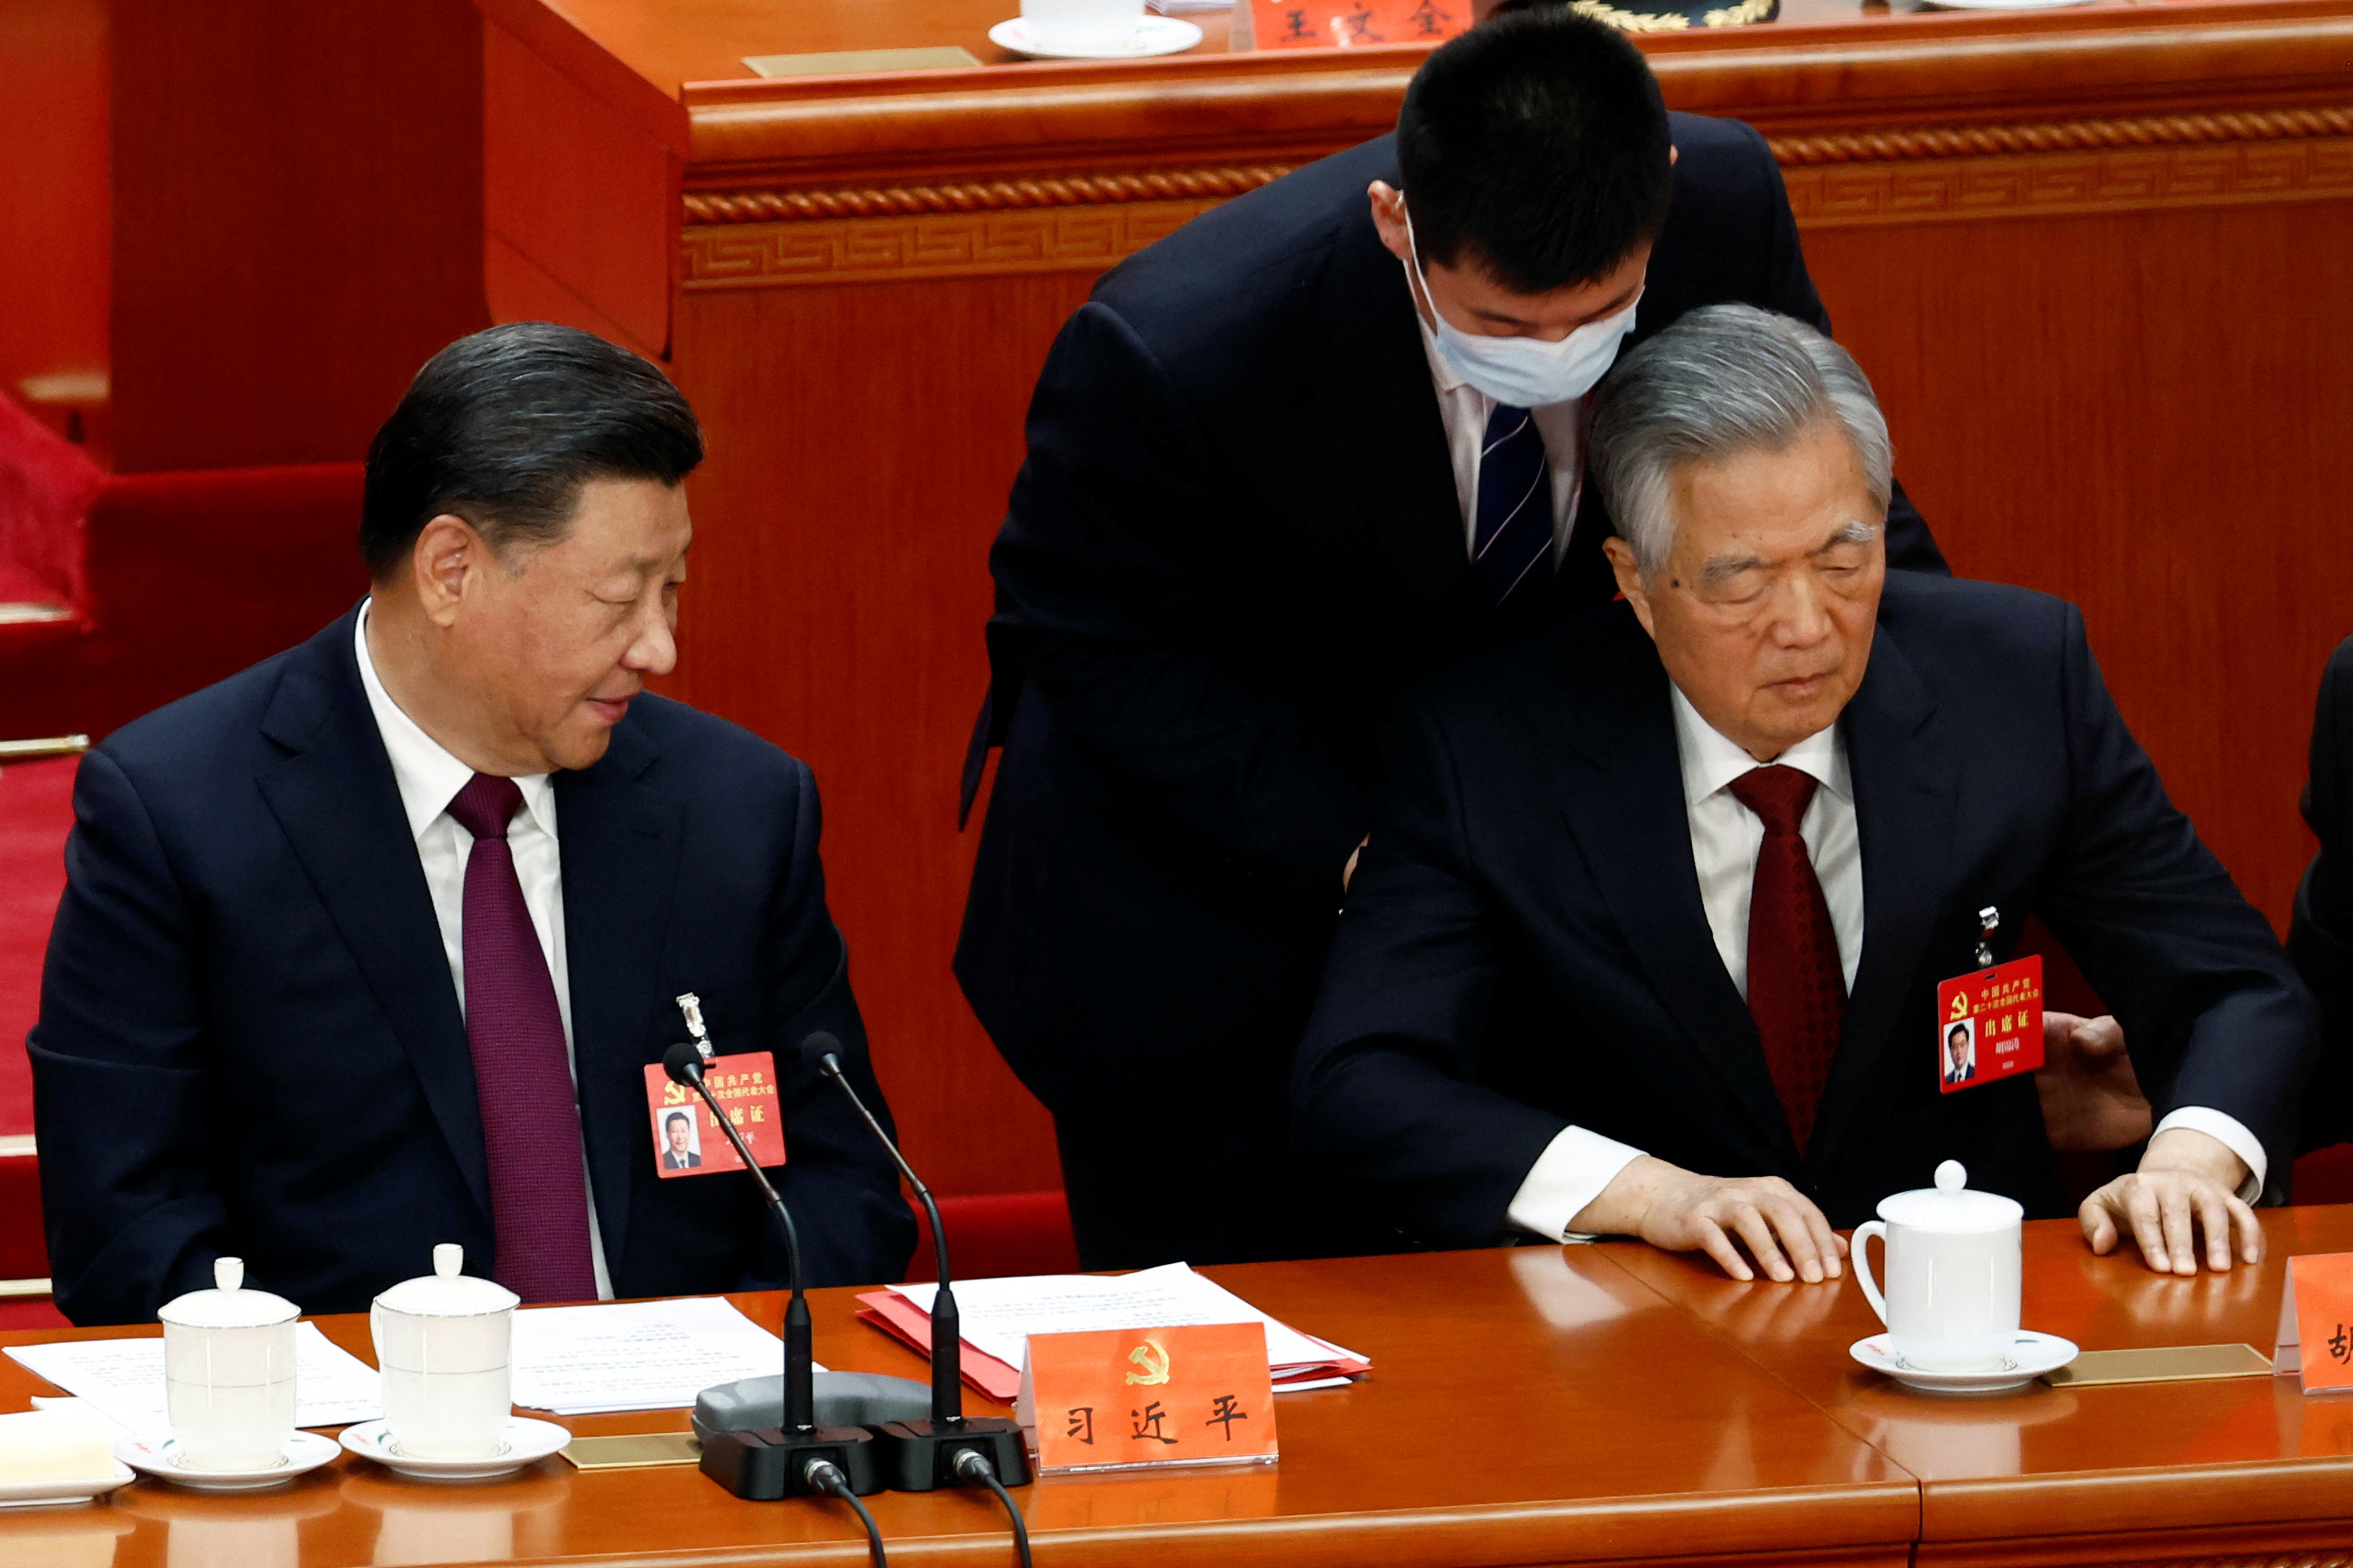 Hu Jintao es forzado a levantarse de la silla para ser sacado del Congreso del Partido Comunista Chino